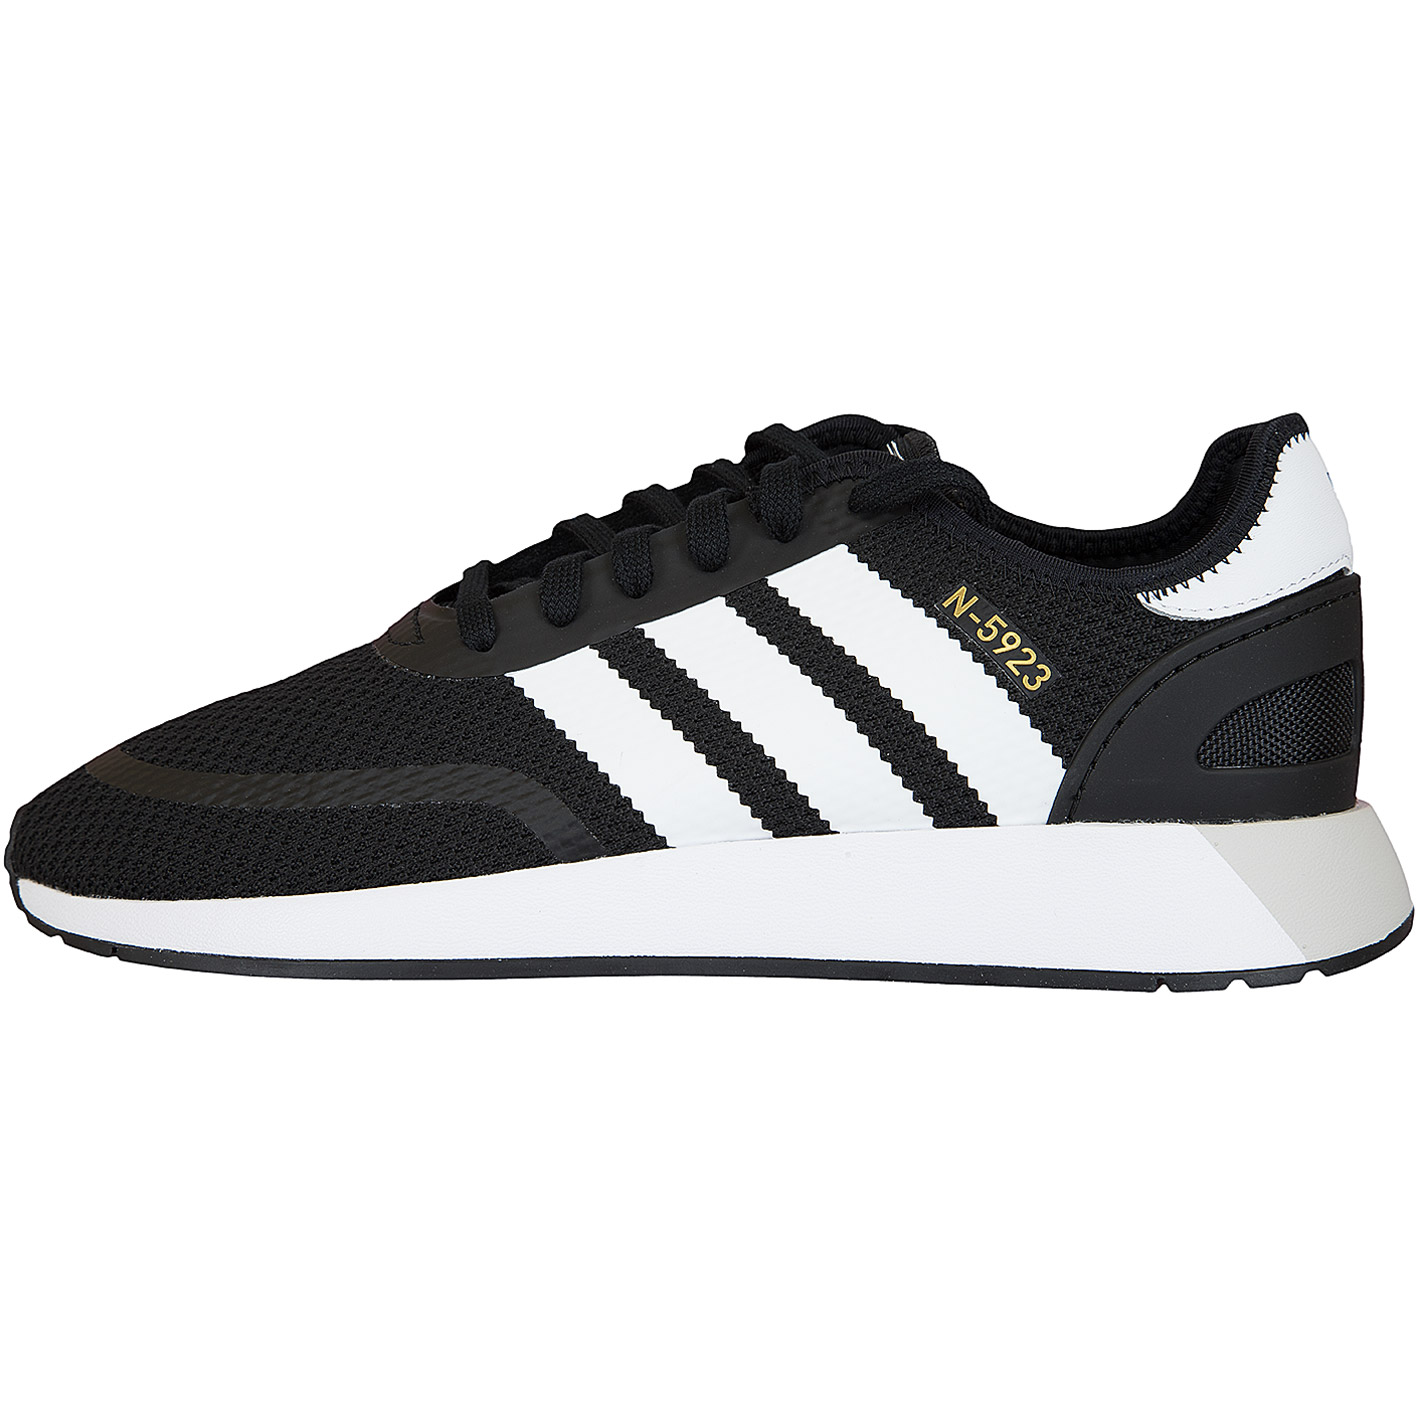 ☆ Adidas Originals Sneaker N-5923 schwarz/weiß - hier bestellen!